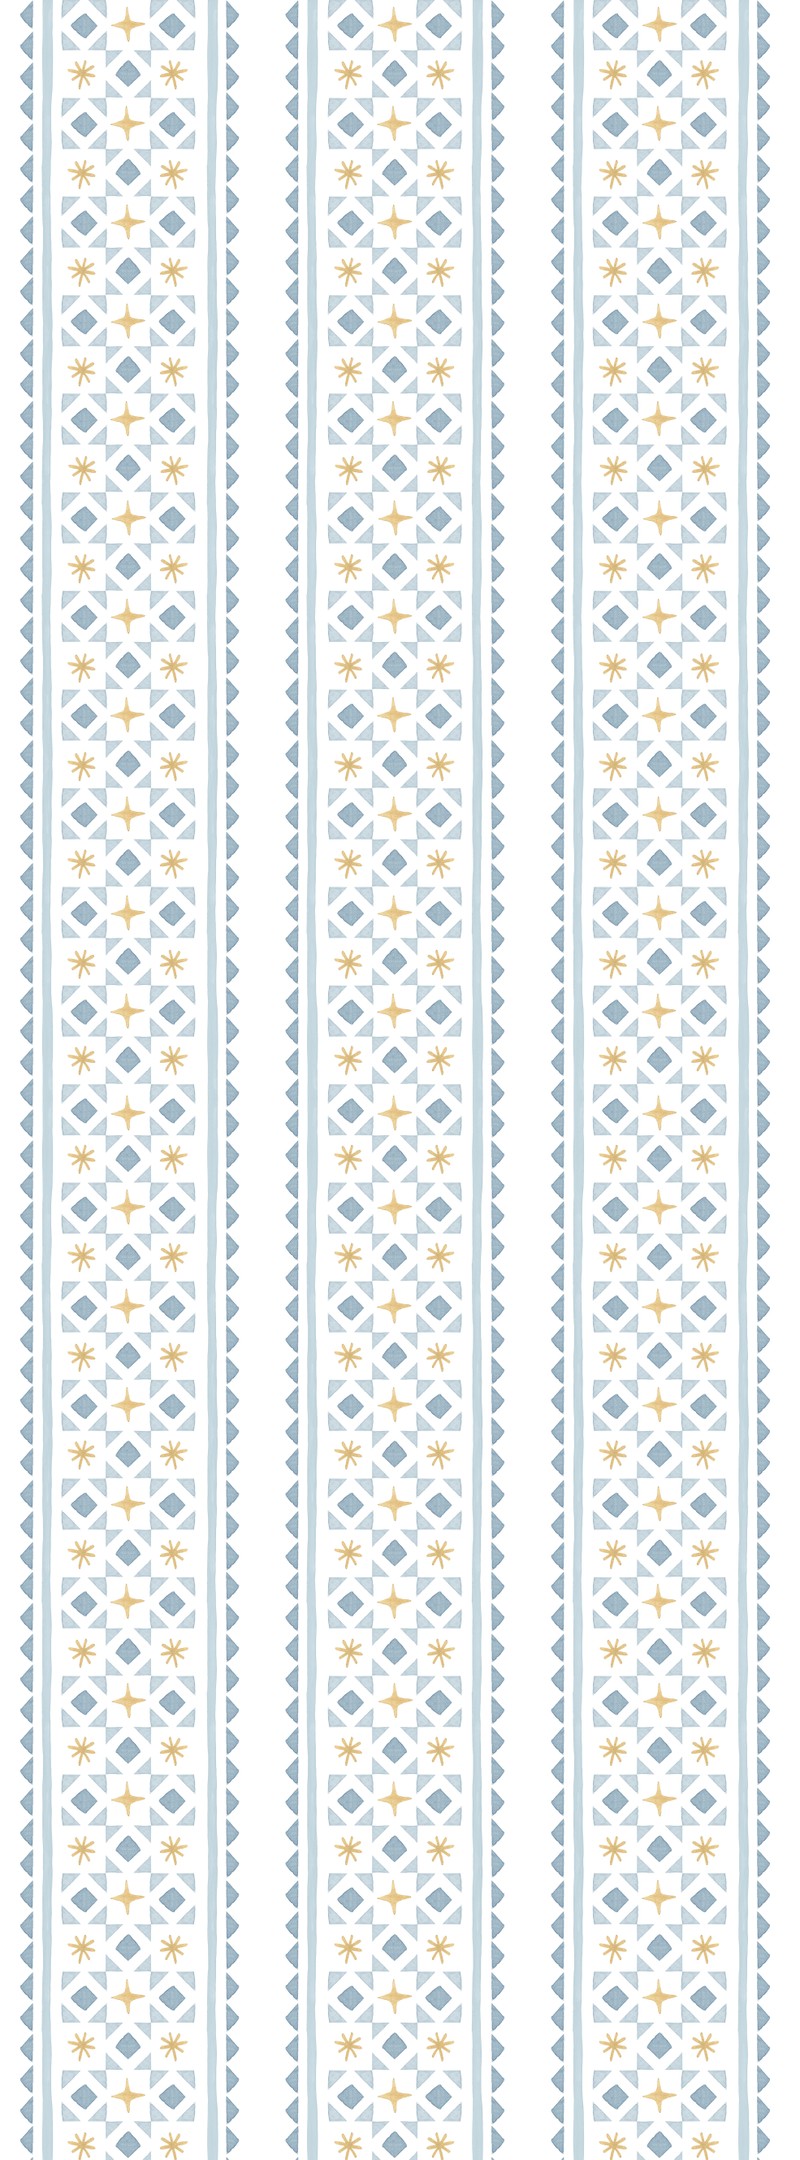 Papel de parede gravataria e asteriscos (azul e amarelo) T.Design - 100% celulose